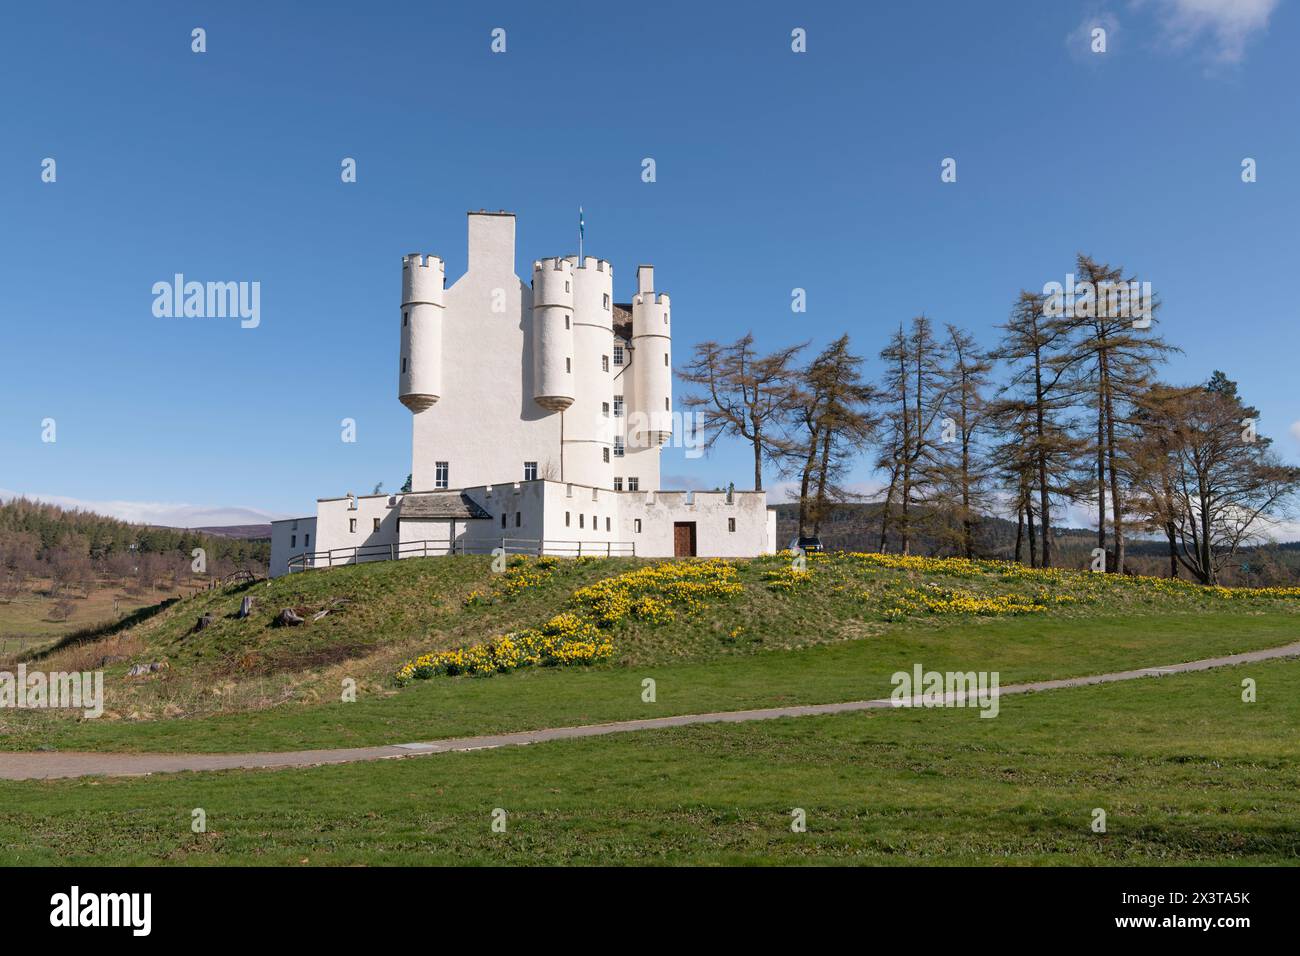 Printemps au château de Braemar dans les Highlands écossais, avec le domaine plein de jonquilles en fleurs Banque D'Images